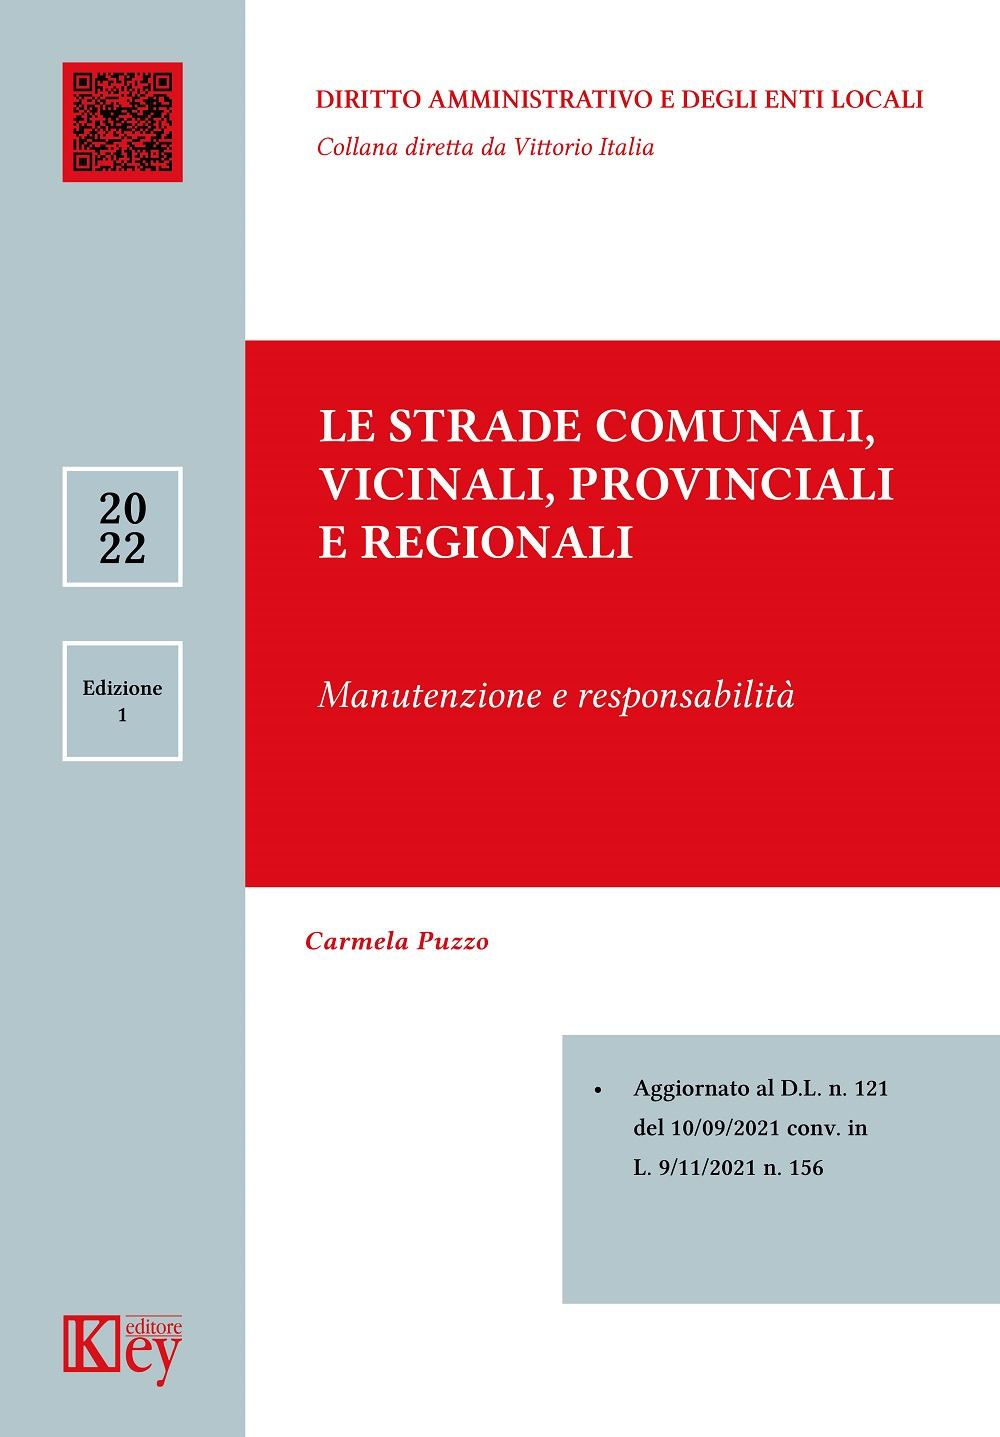 Image of Le strade comunali, vicinali, provinciali e regionali manutenzione e responsabilità